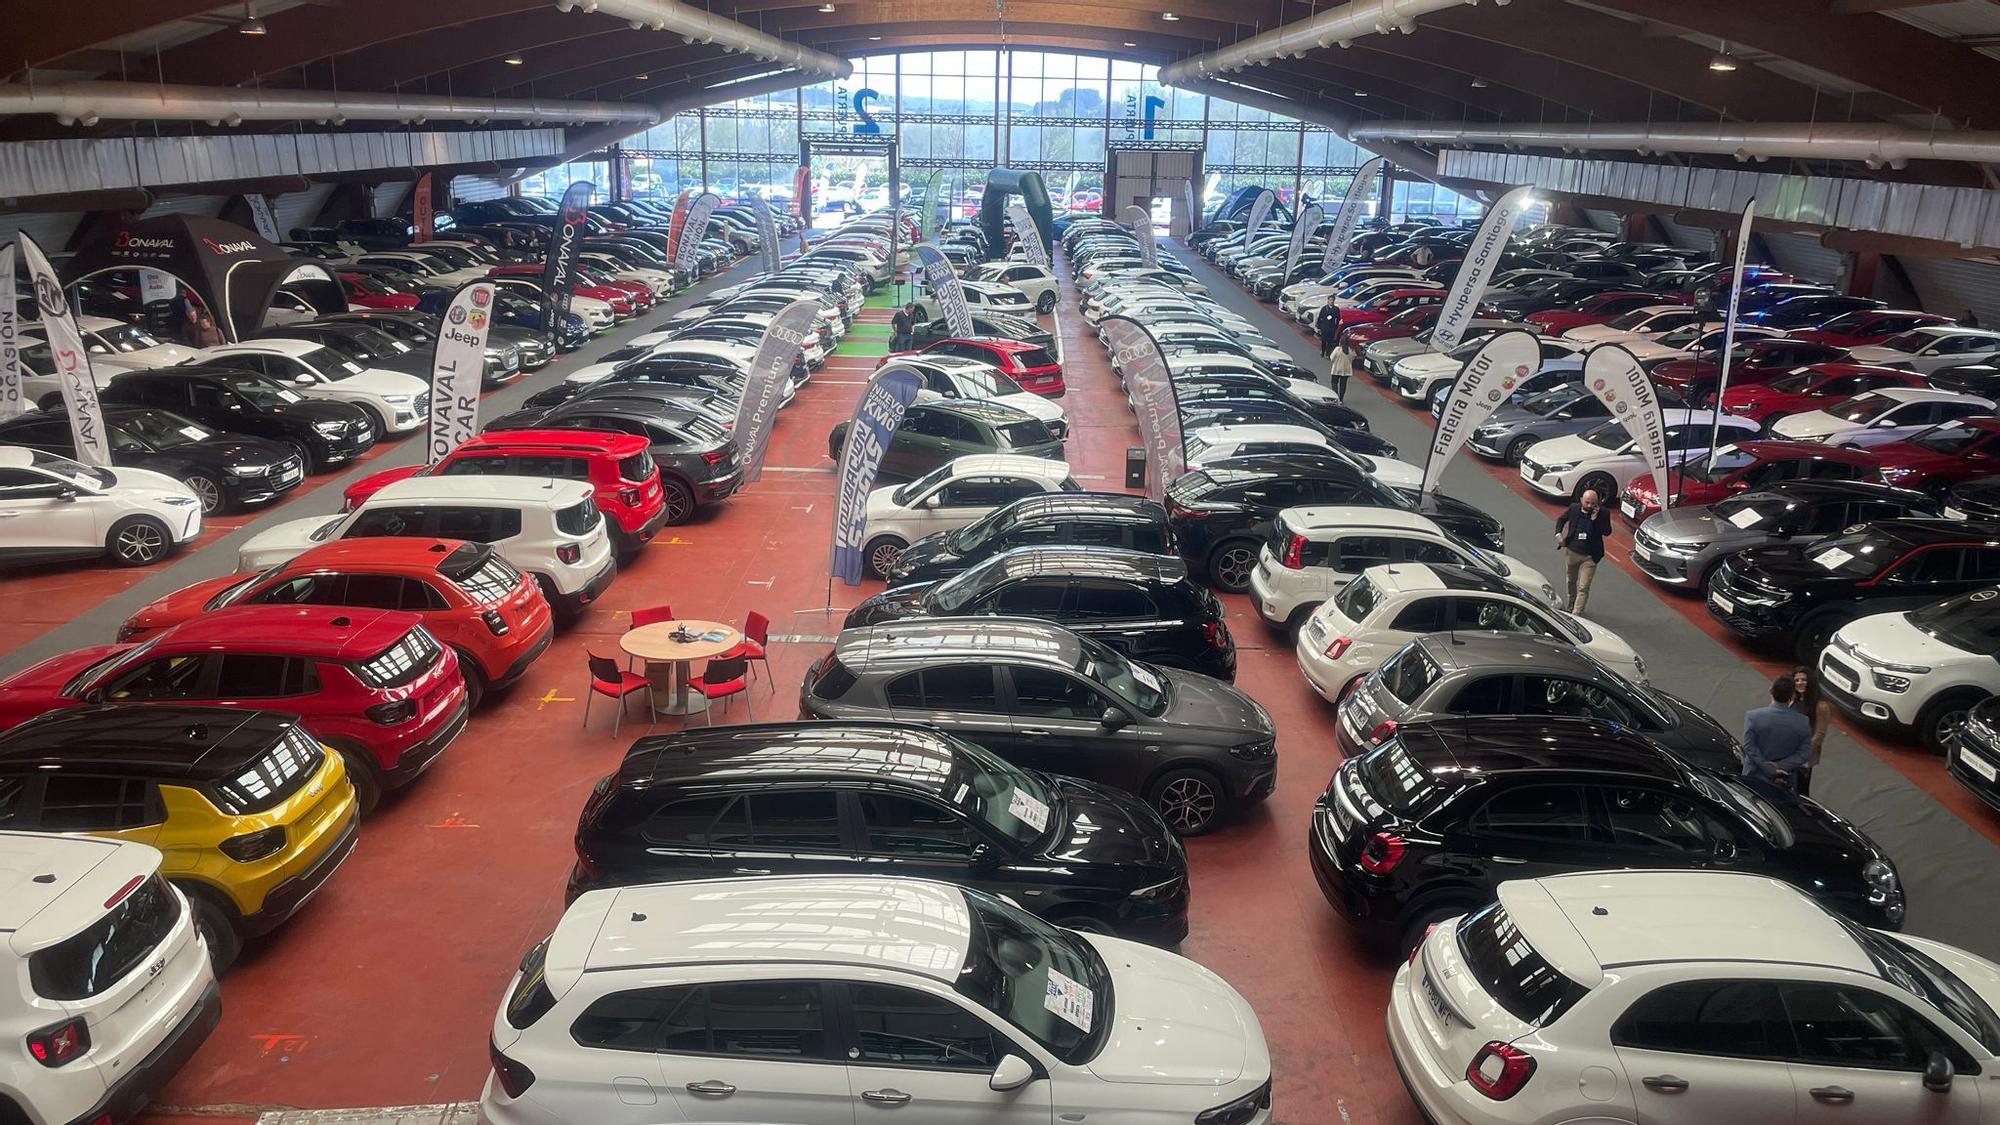 Más de 400 automóviles de diversas marcas y modelos a precios muy competitivos